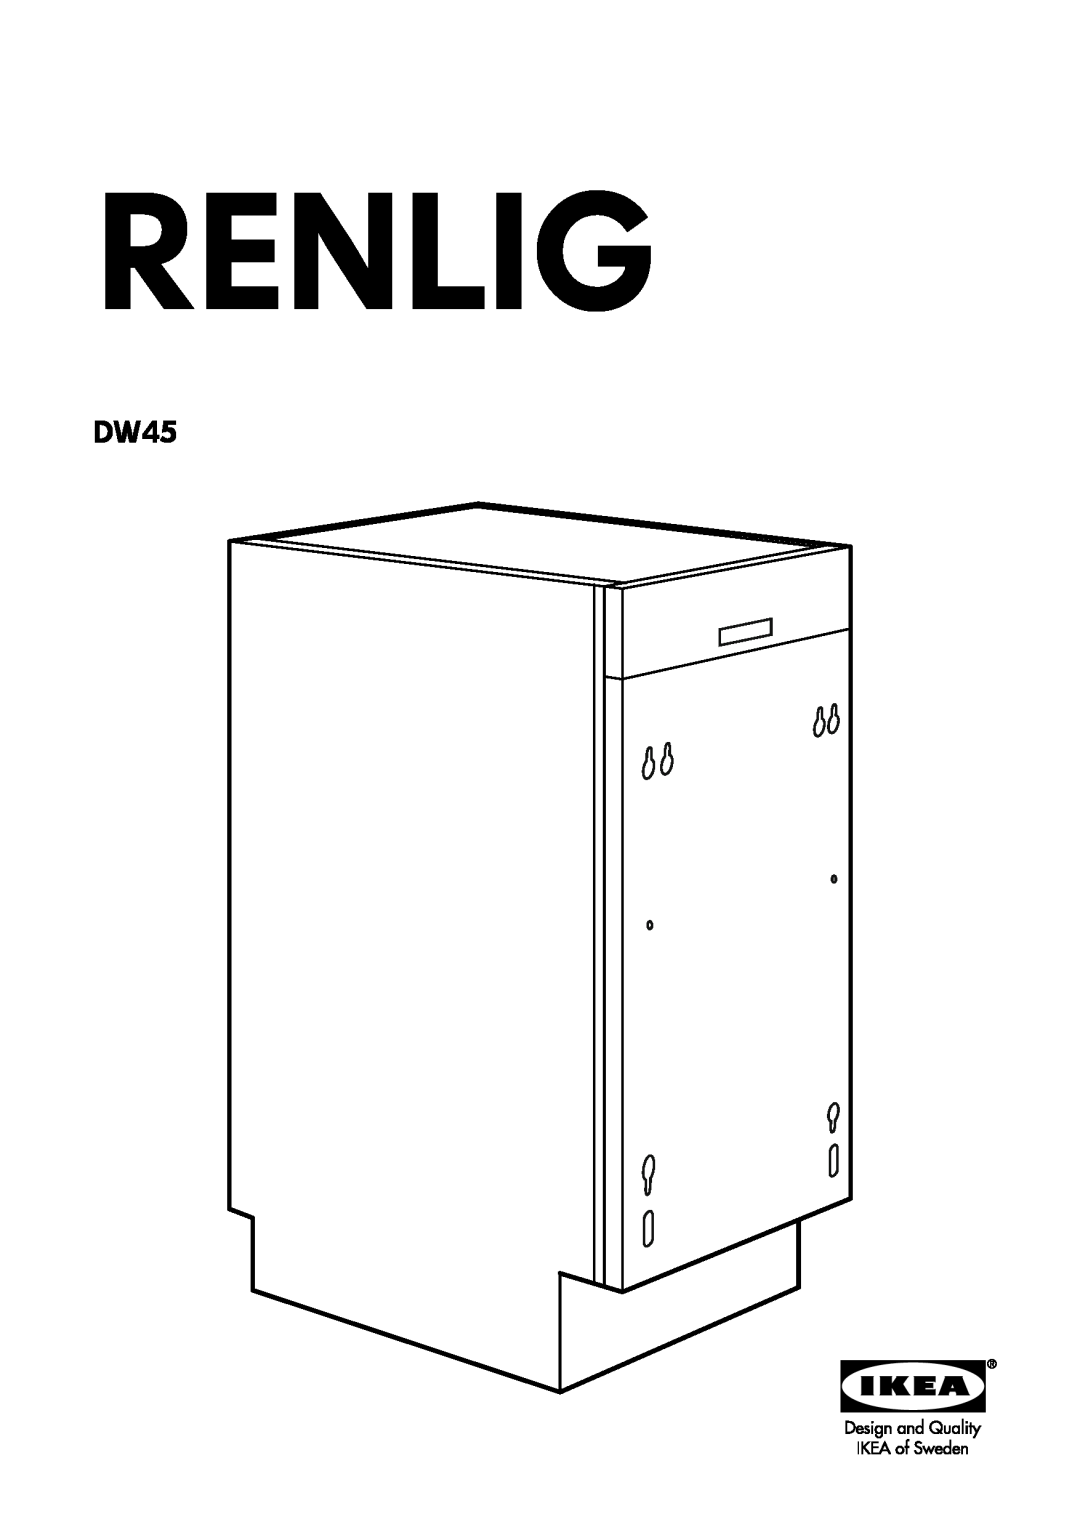 IKEA DW45 manual Renlig 